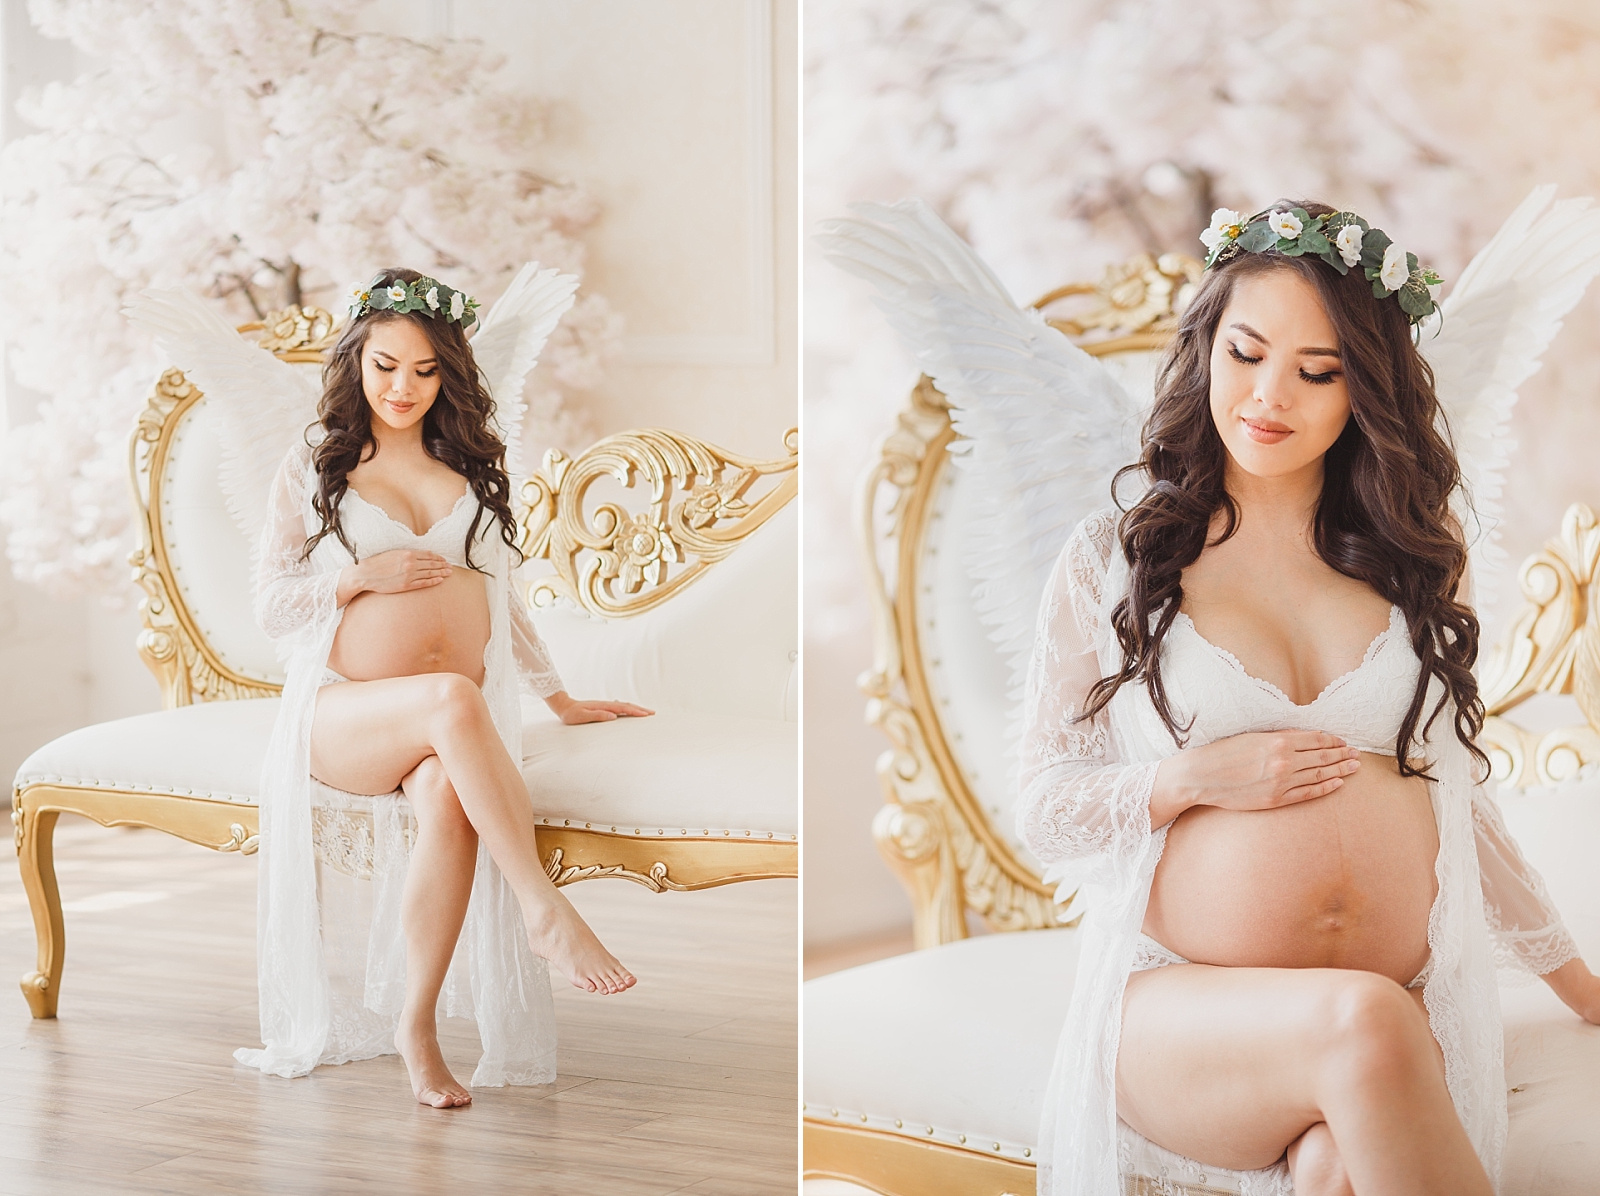 Fairytale Los Angeles maternity photographer